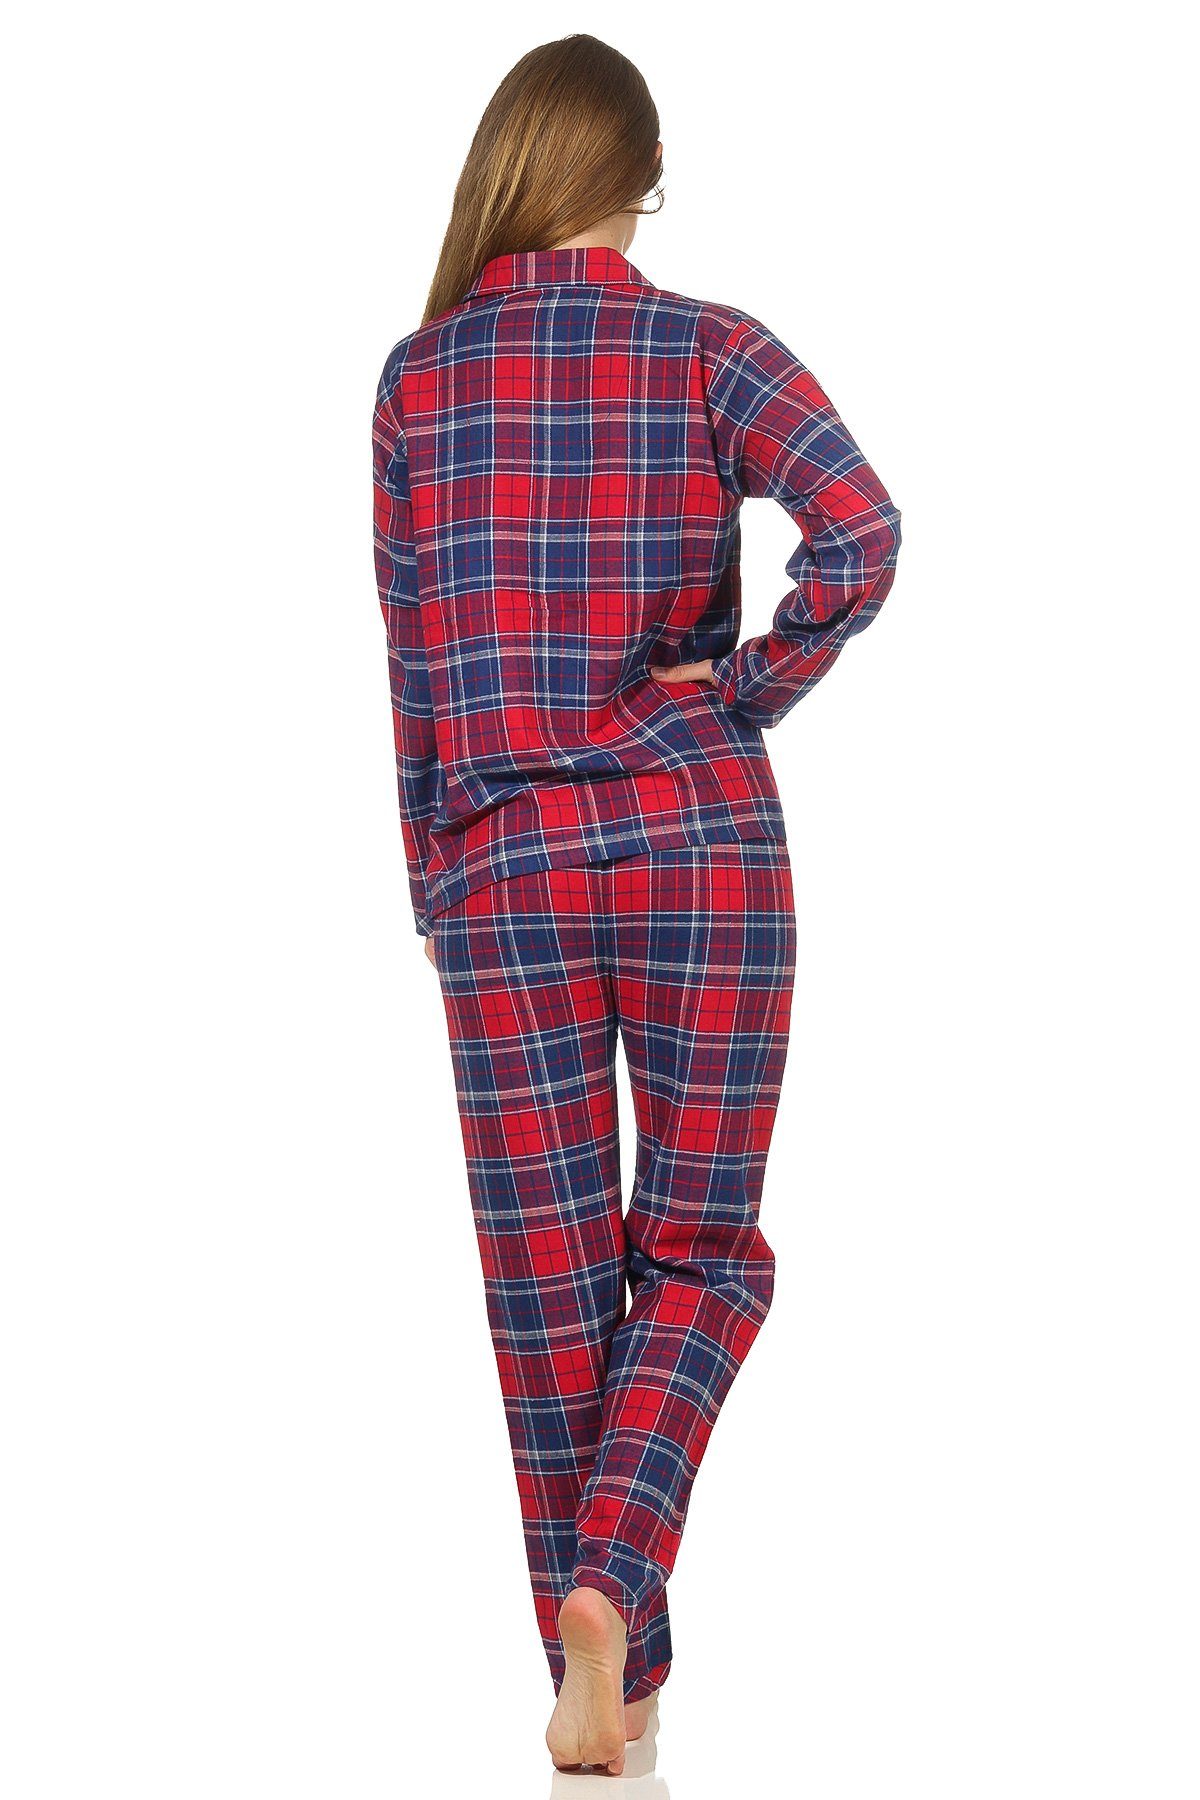 auch in Übergrössen 201 95 321 Damen Flanell Pyjama Schlafanzug in edlen Karodesign